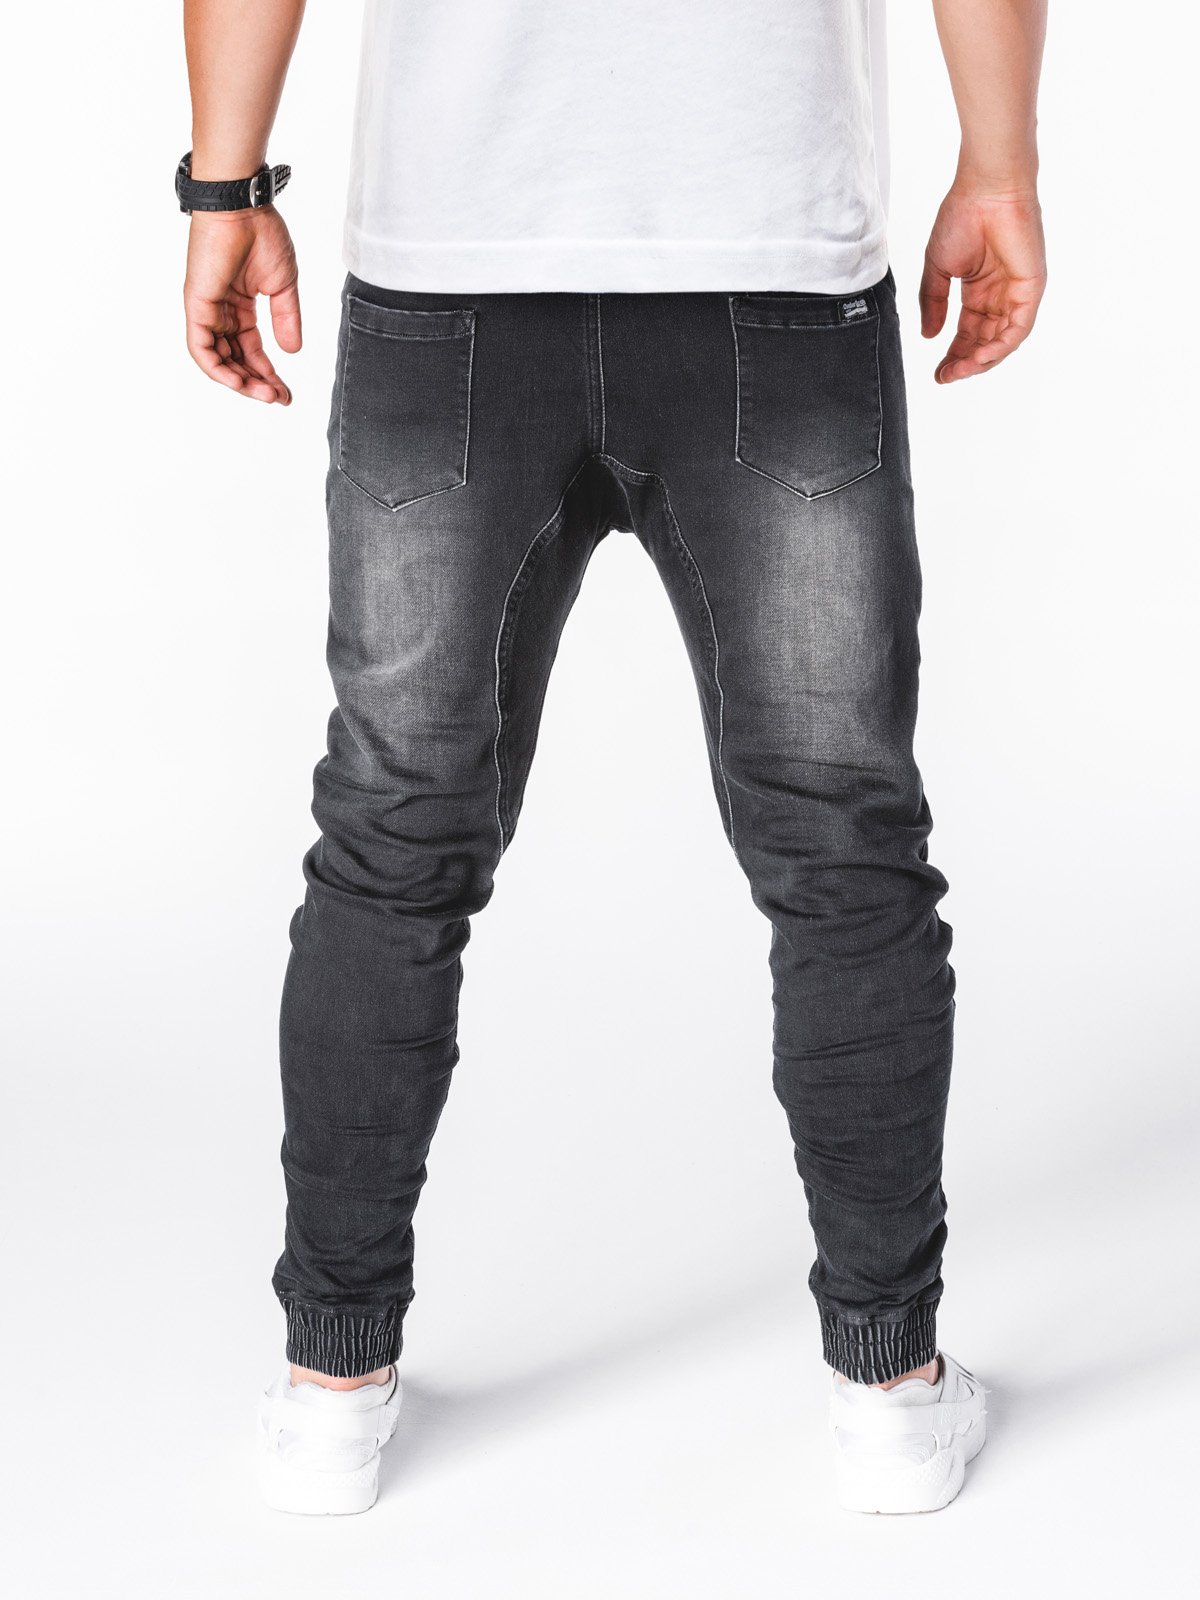 Men's jeans joggers P407 - black | MODONE wholesale - Clothing For Men